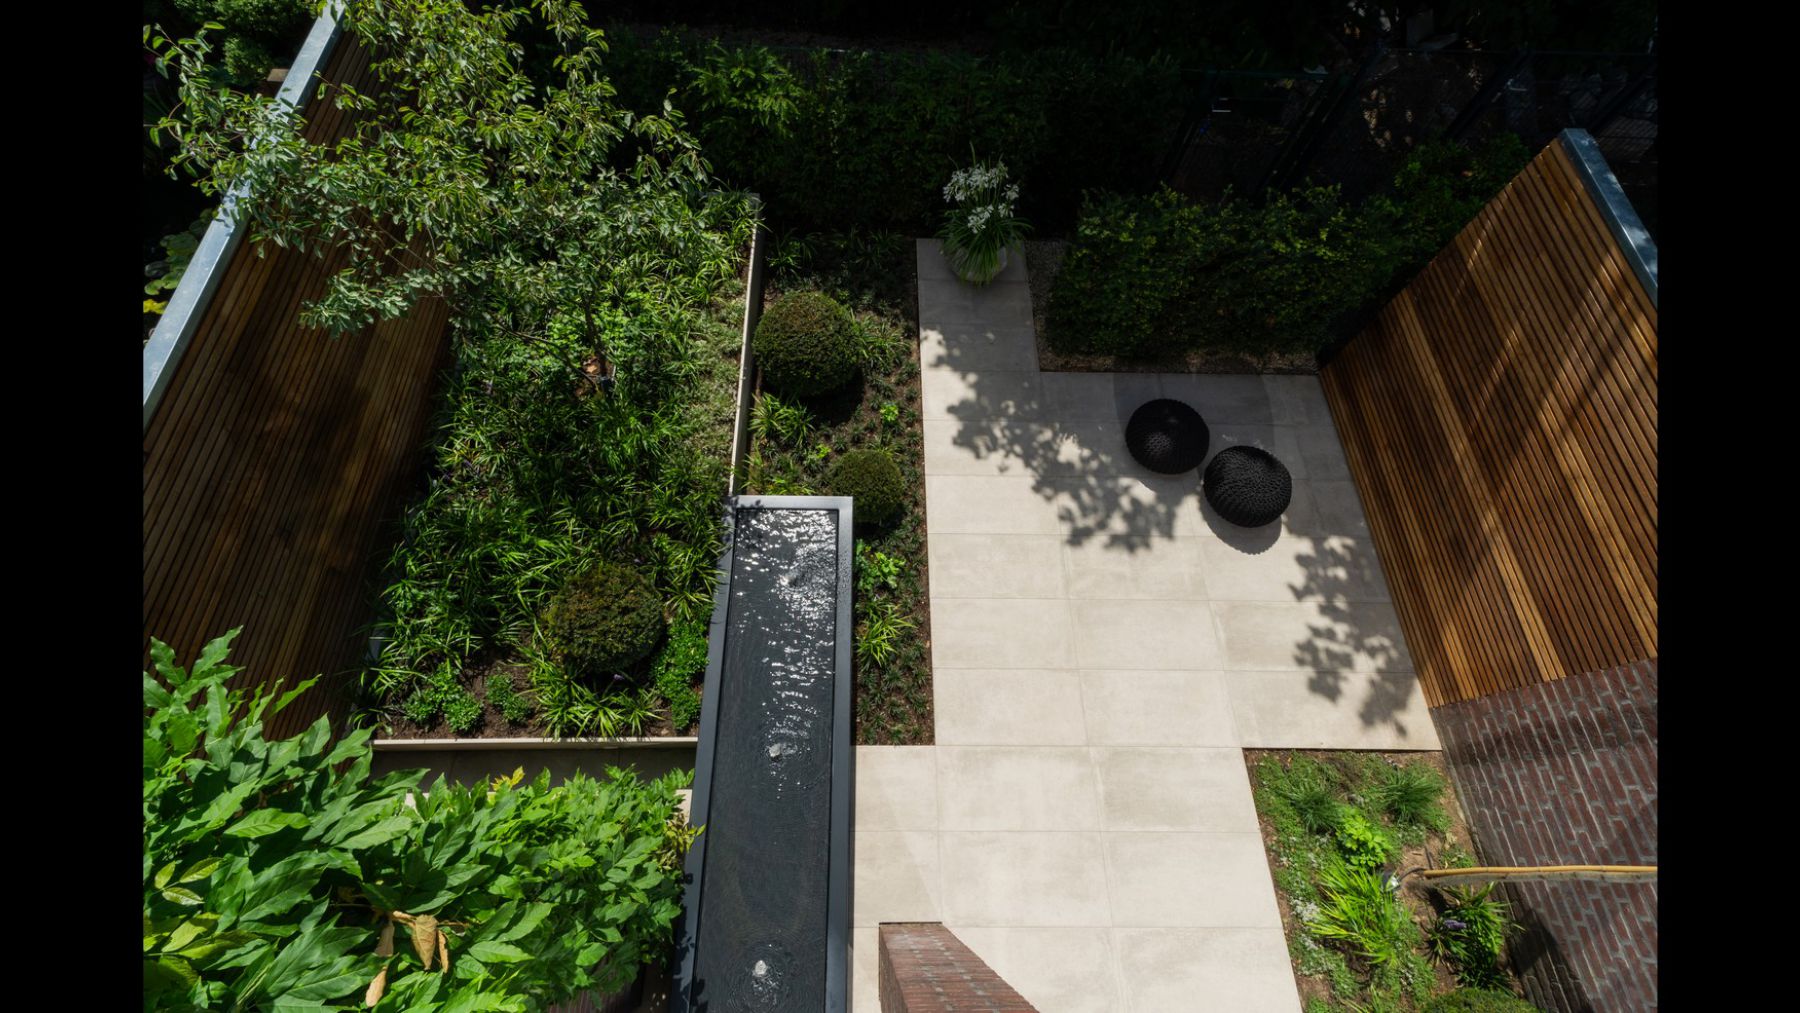 6.2 Ein exquisites Gartenprojekt auf 50 m2 in Bocholt